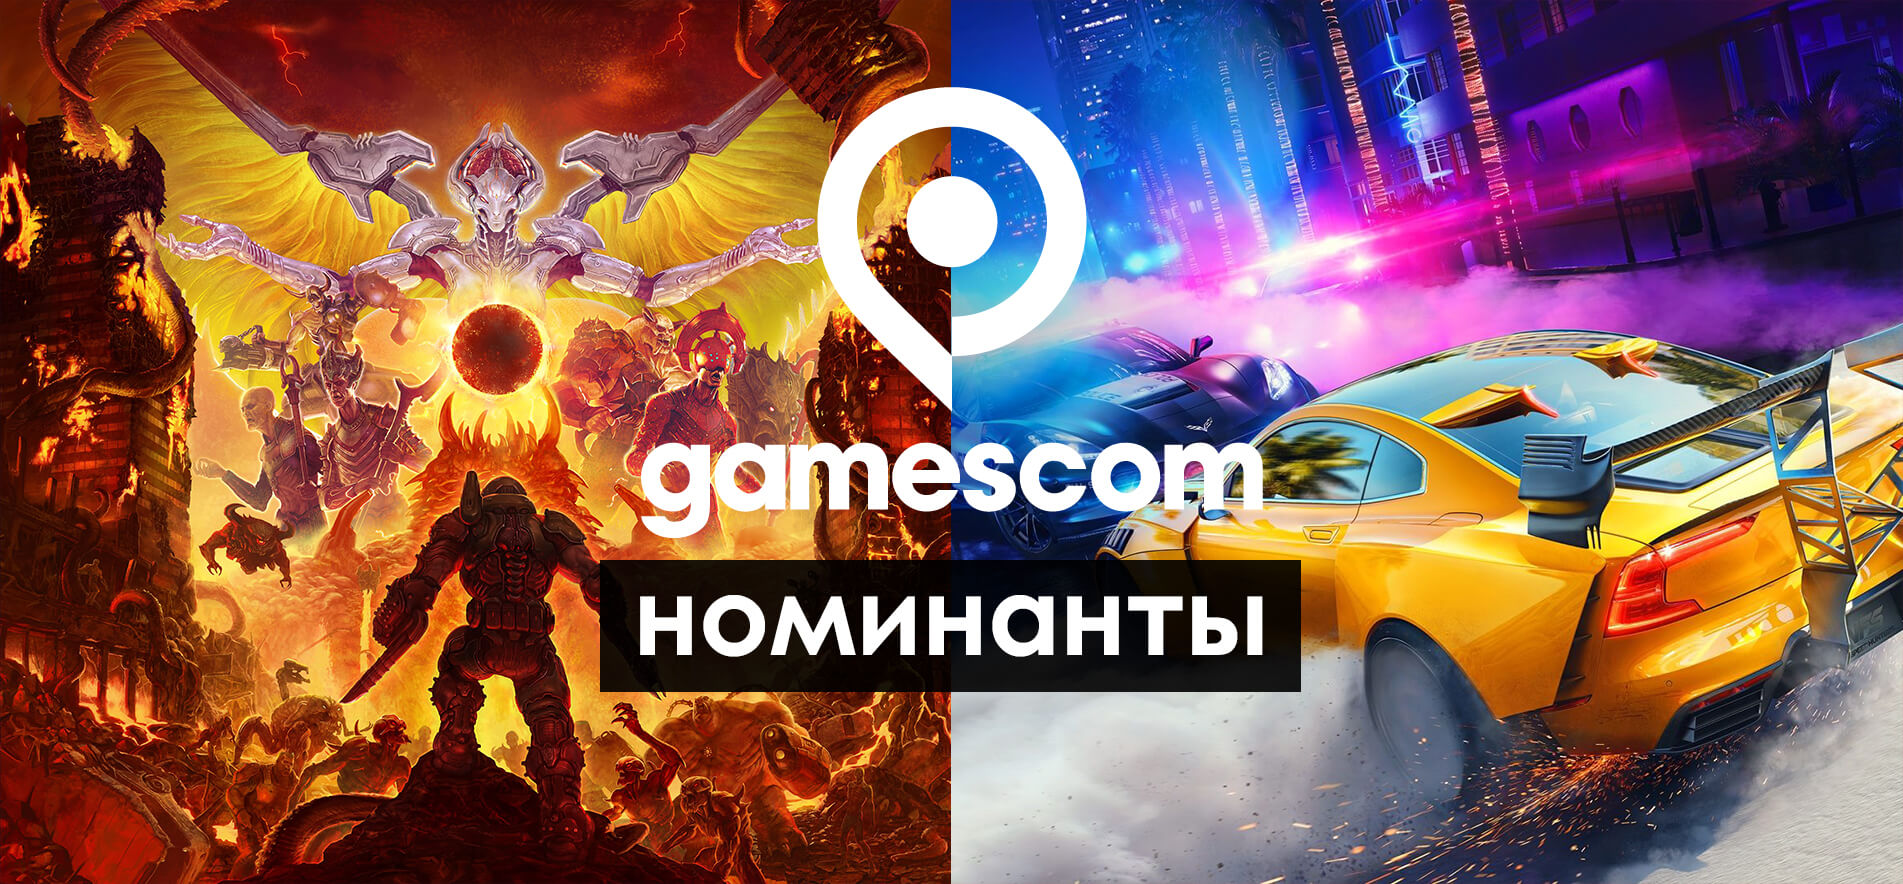 Объявлены номинанты премии Gamescom 2019 (фото)